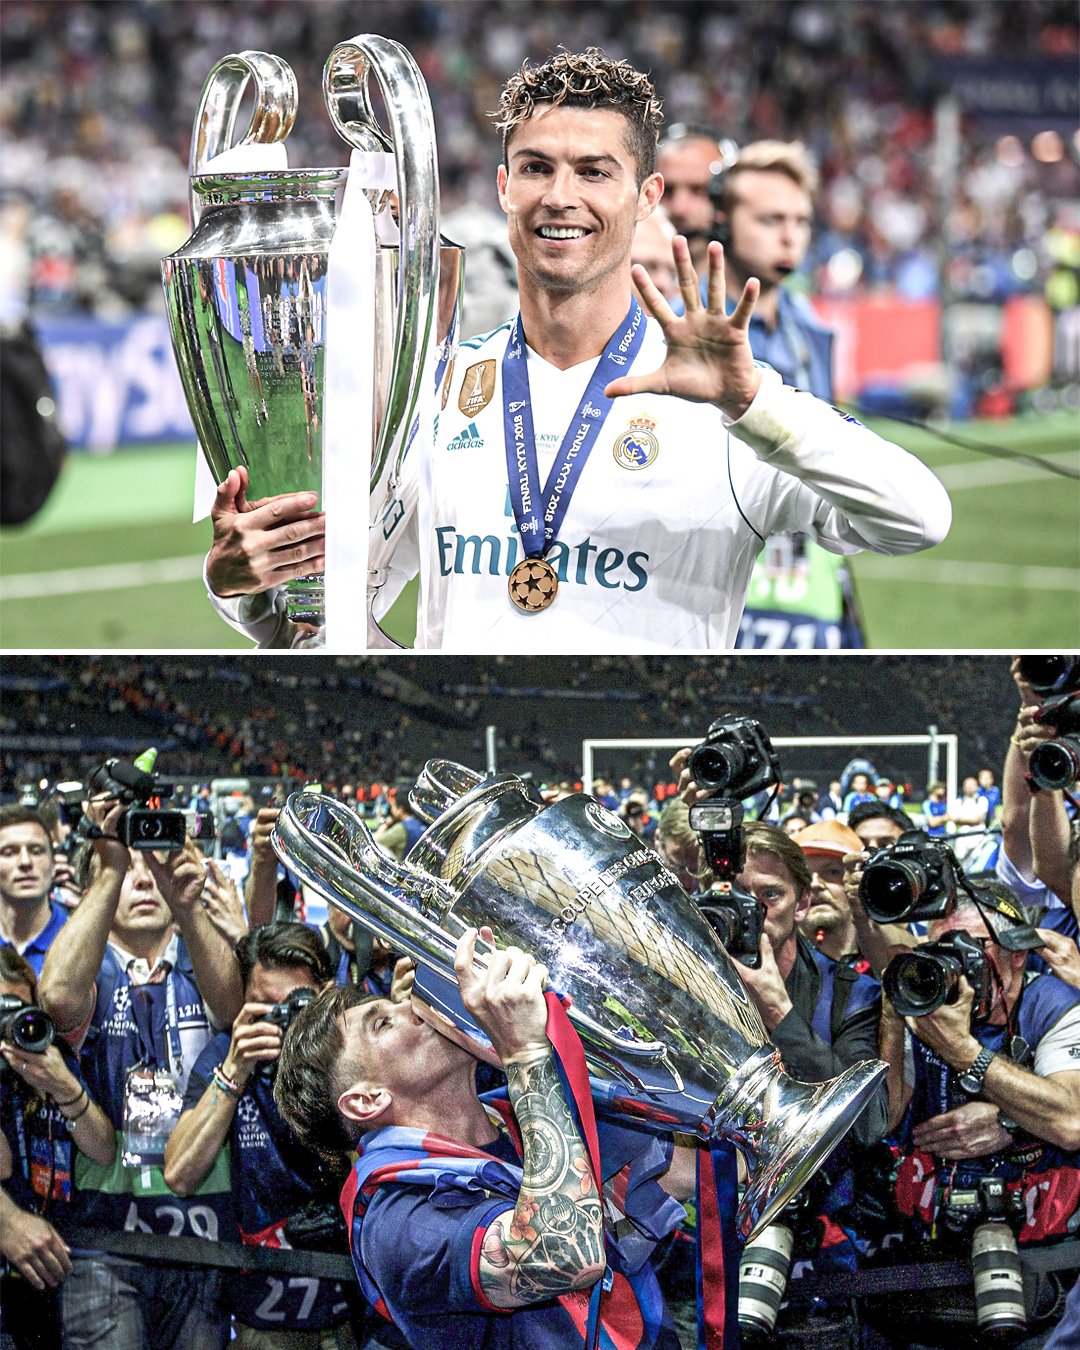 Không có gì hoàn hảo hơn khi xem Messi và Ronaldo chia sẻ Cúp vô địch Liên đoàn bóng đá châu Âu. Với hình ảnh hai cầu thủ tài năng nhất thế giới nâng cao chiếc cúp tài ba, sự kết hợp giữa hai ngôi sao lớn sẽ khiến bạn choáng ngợp vì quyết định và kỹ năng của họ trên sân.